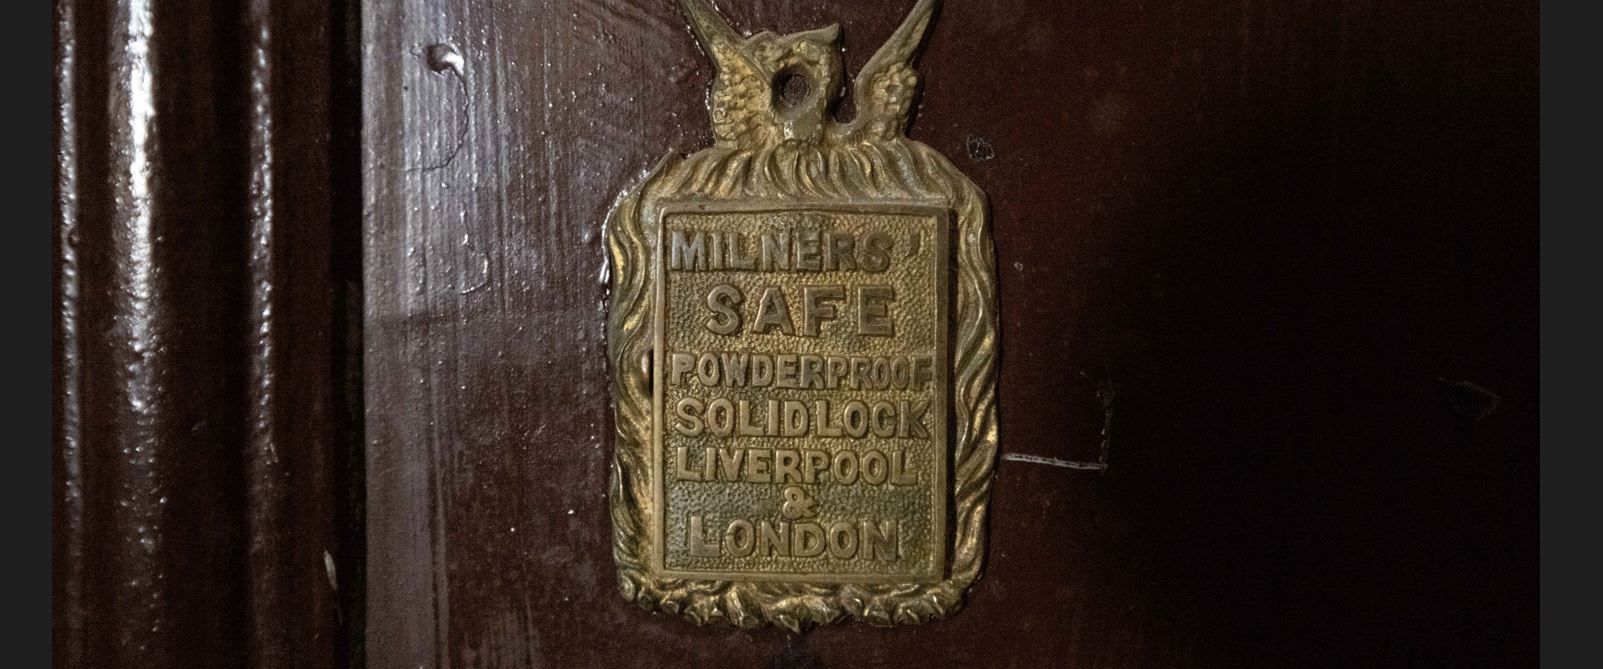 plaque on safe door